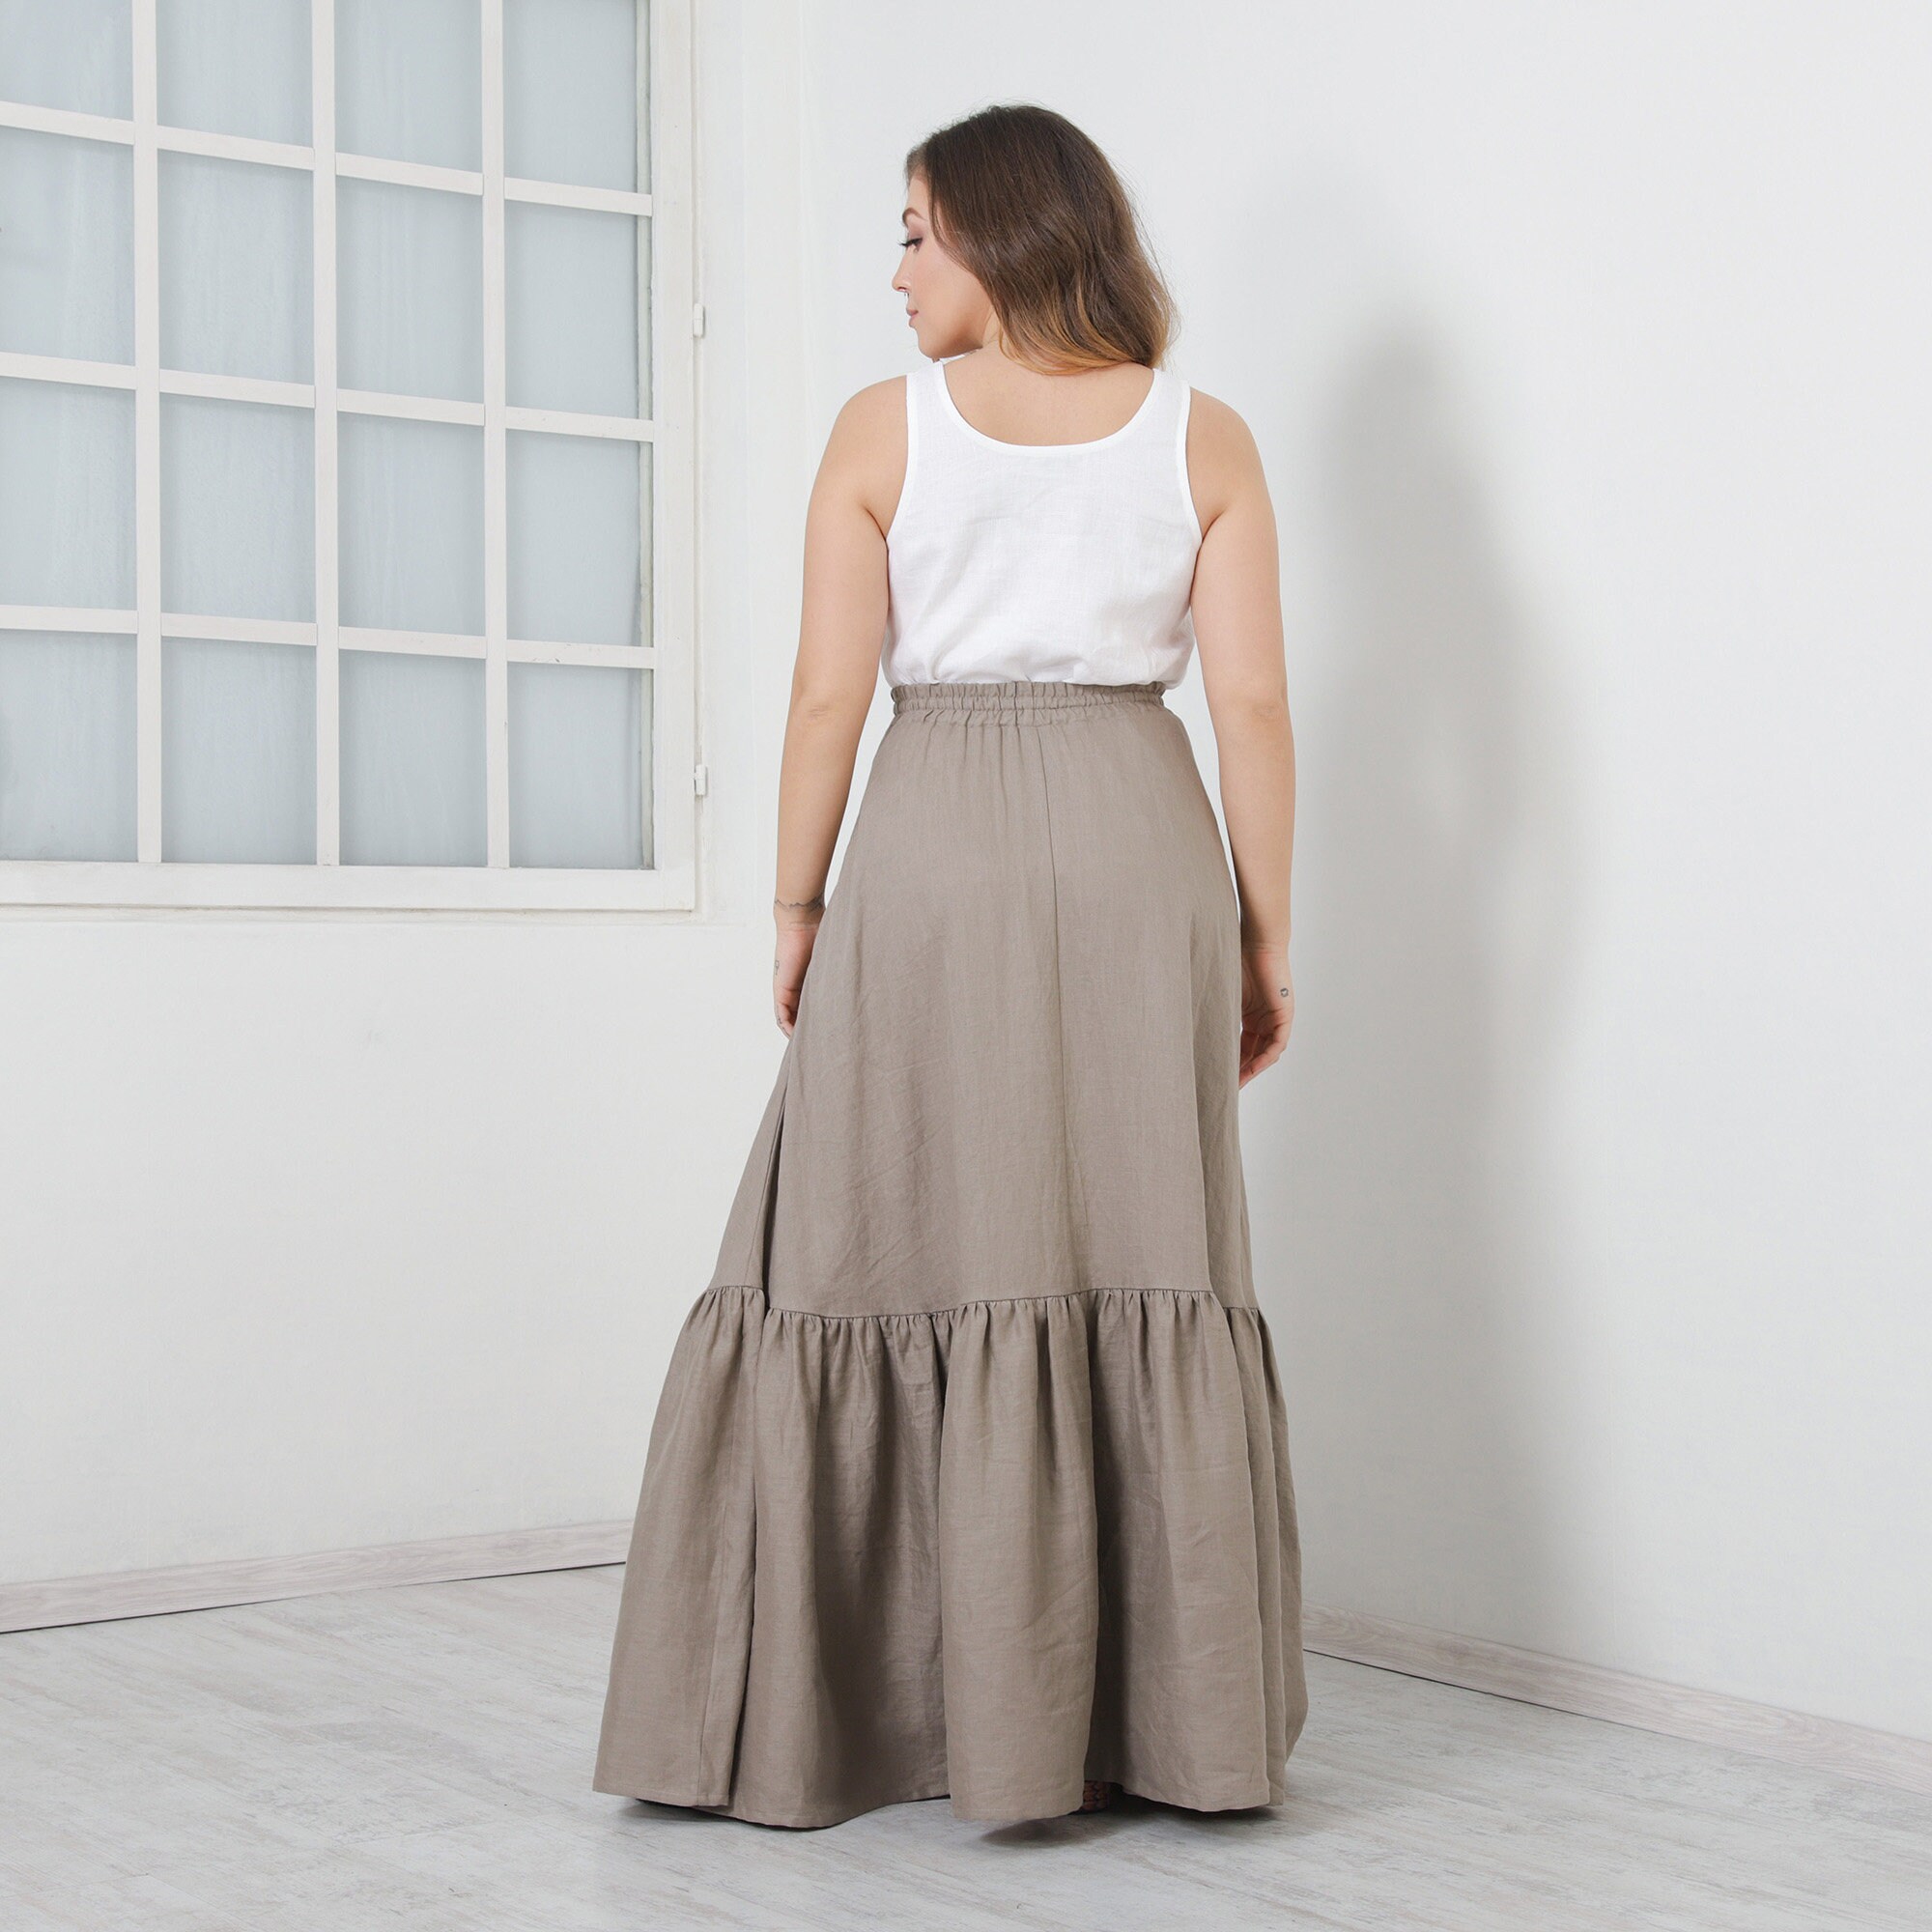 Long Linen Skirt TONI Full Circle Skirt Beautiful Skirt With | Etsy